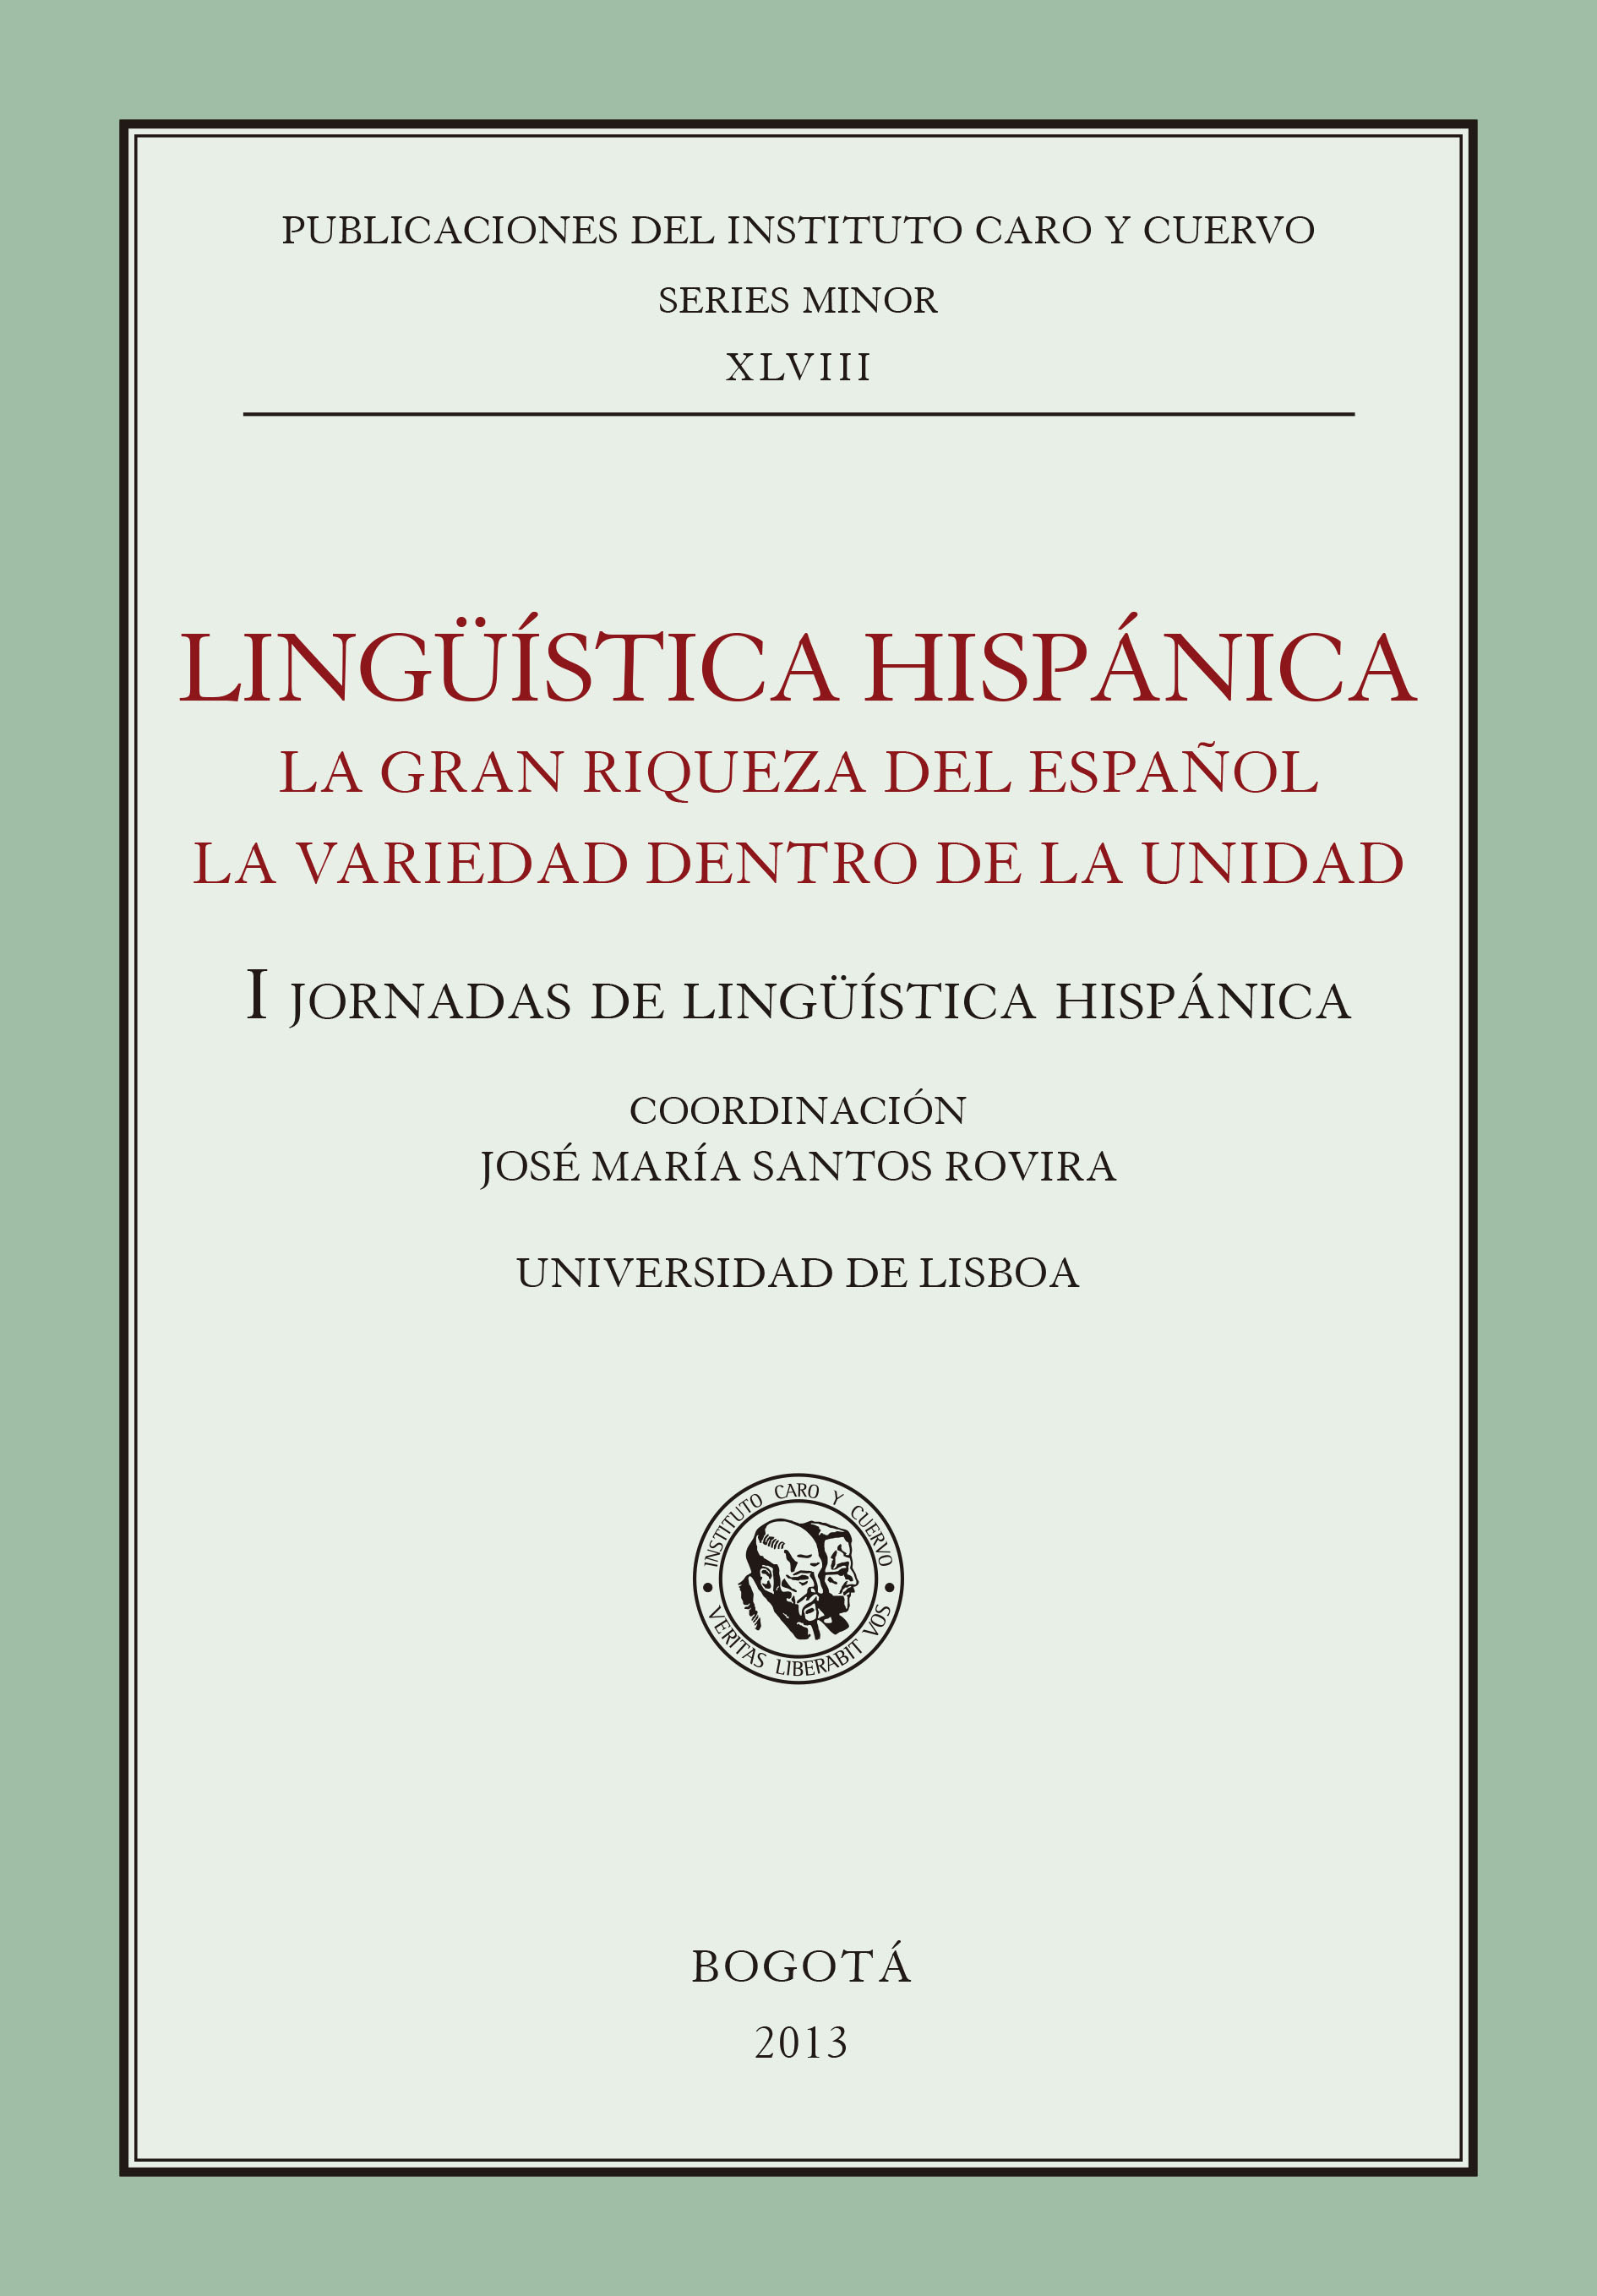 Lingüística hispánica. La gran riqueza del español: la variedad dentro de la unidad